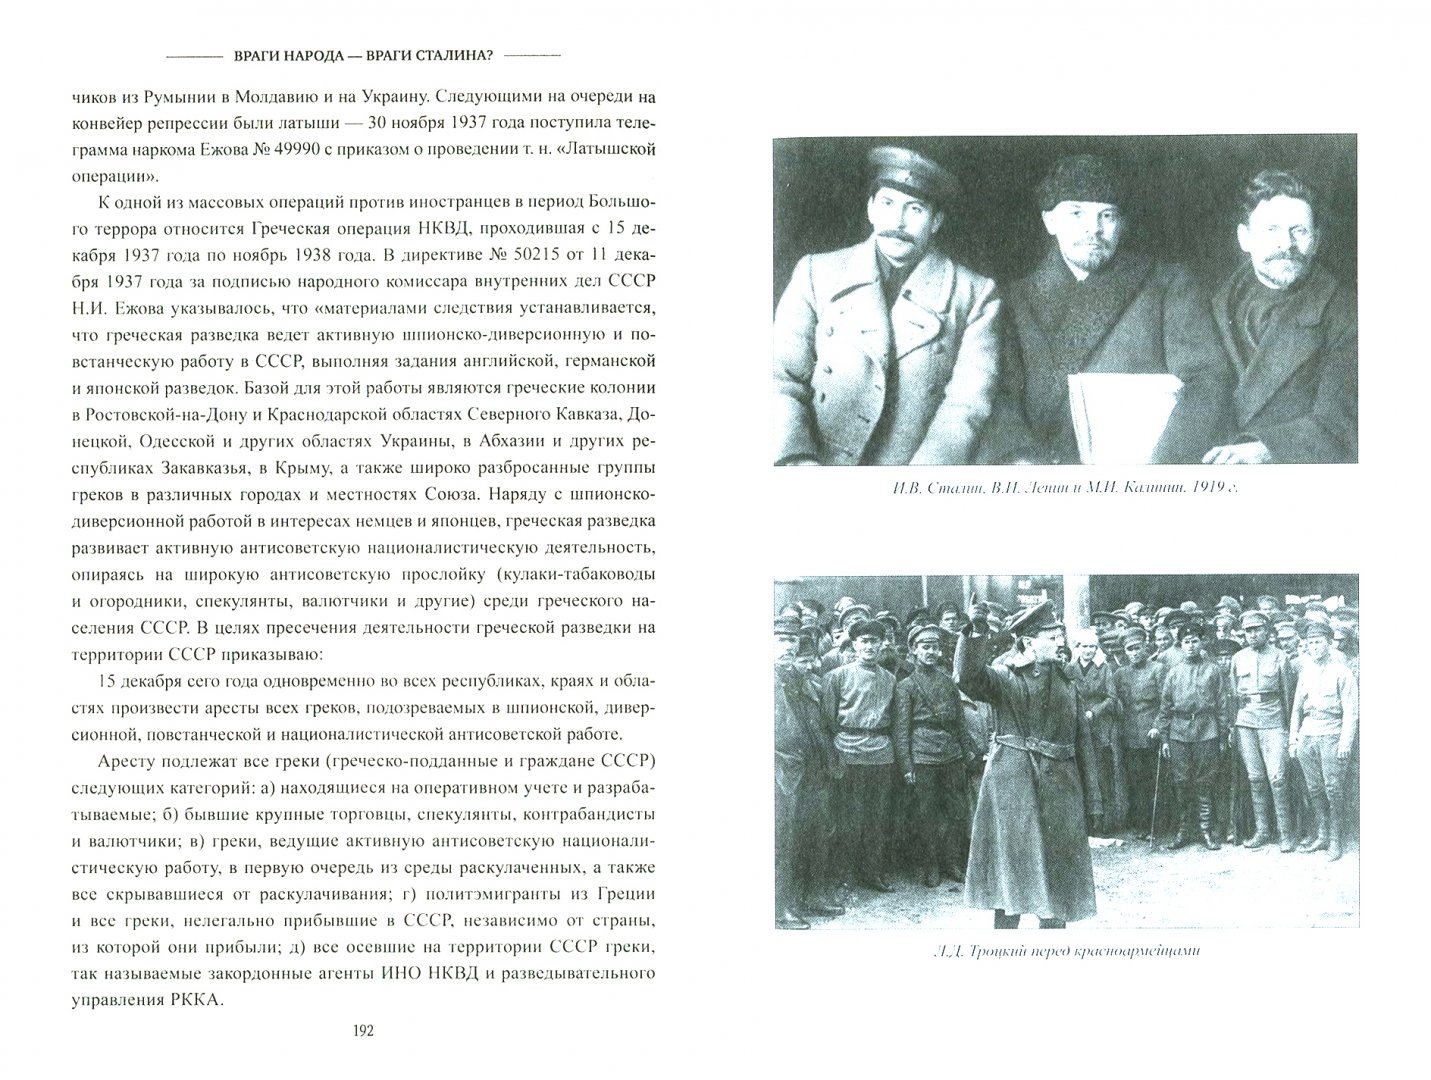 Иллюстрация 1 из 24 для Враги народа - враги Сталина? Анатомия репрессий - Алекс Громов | Лабиринт - книги. Источник: Лабиринт